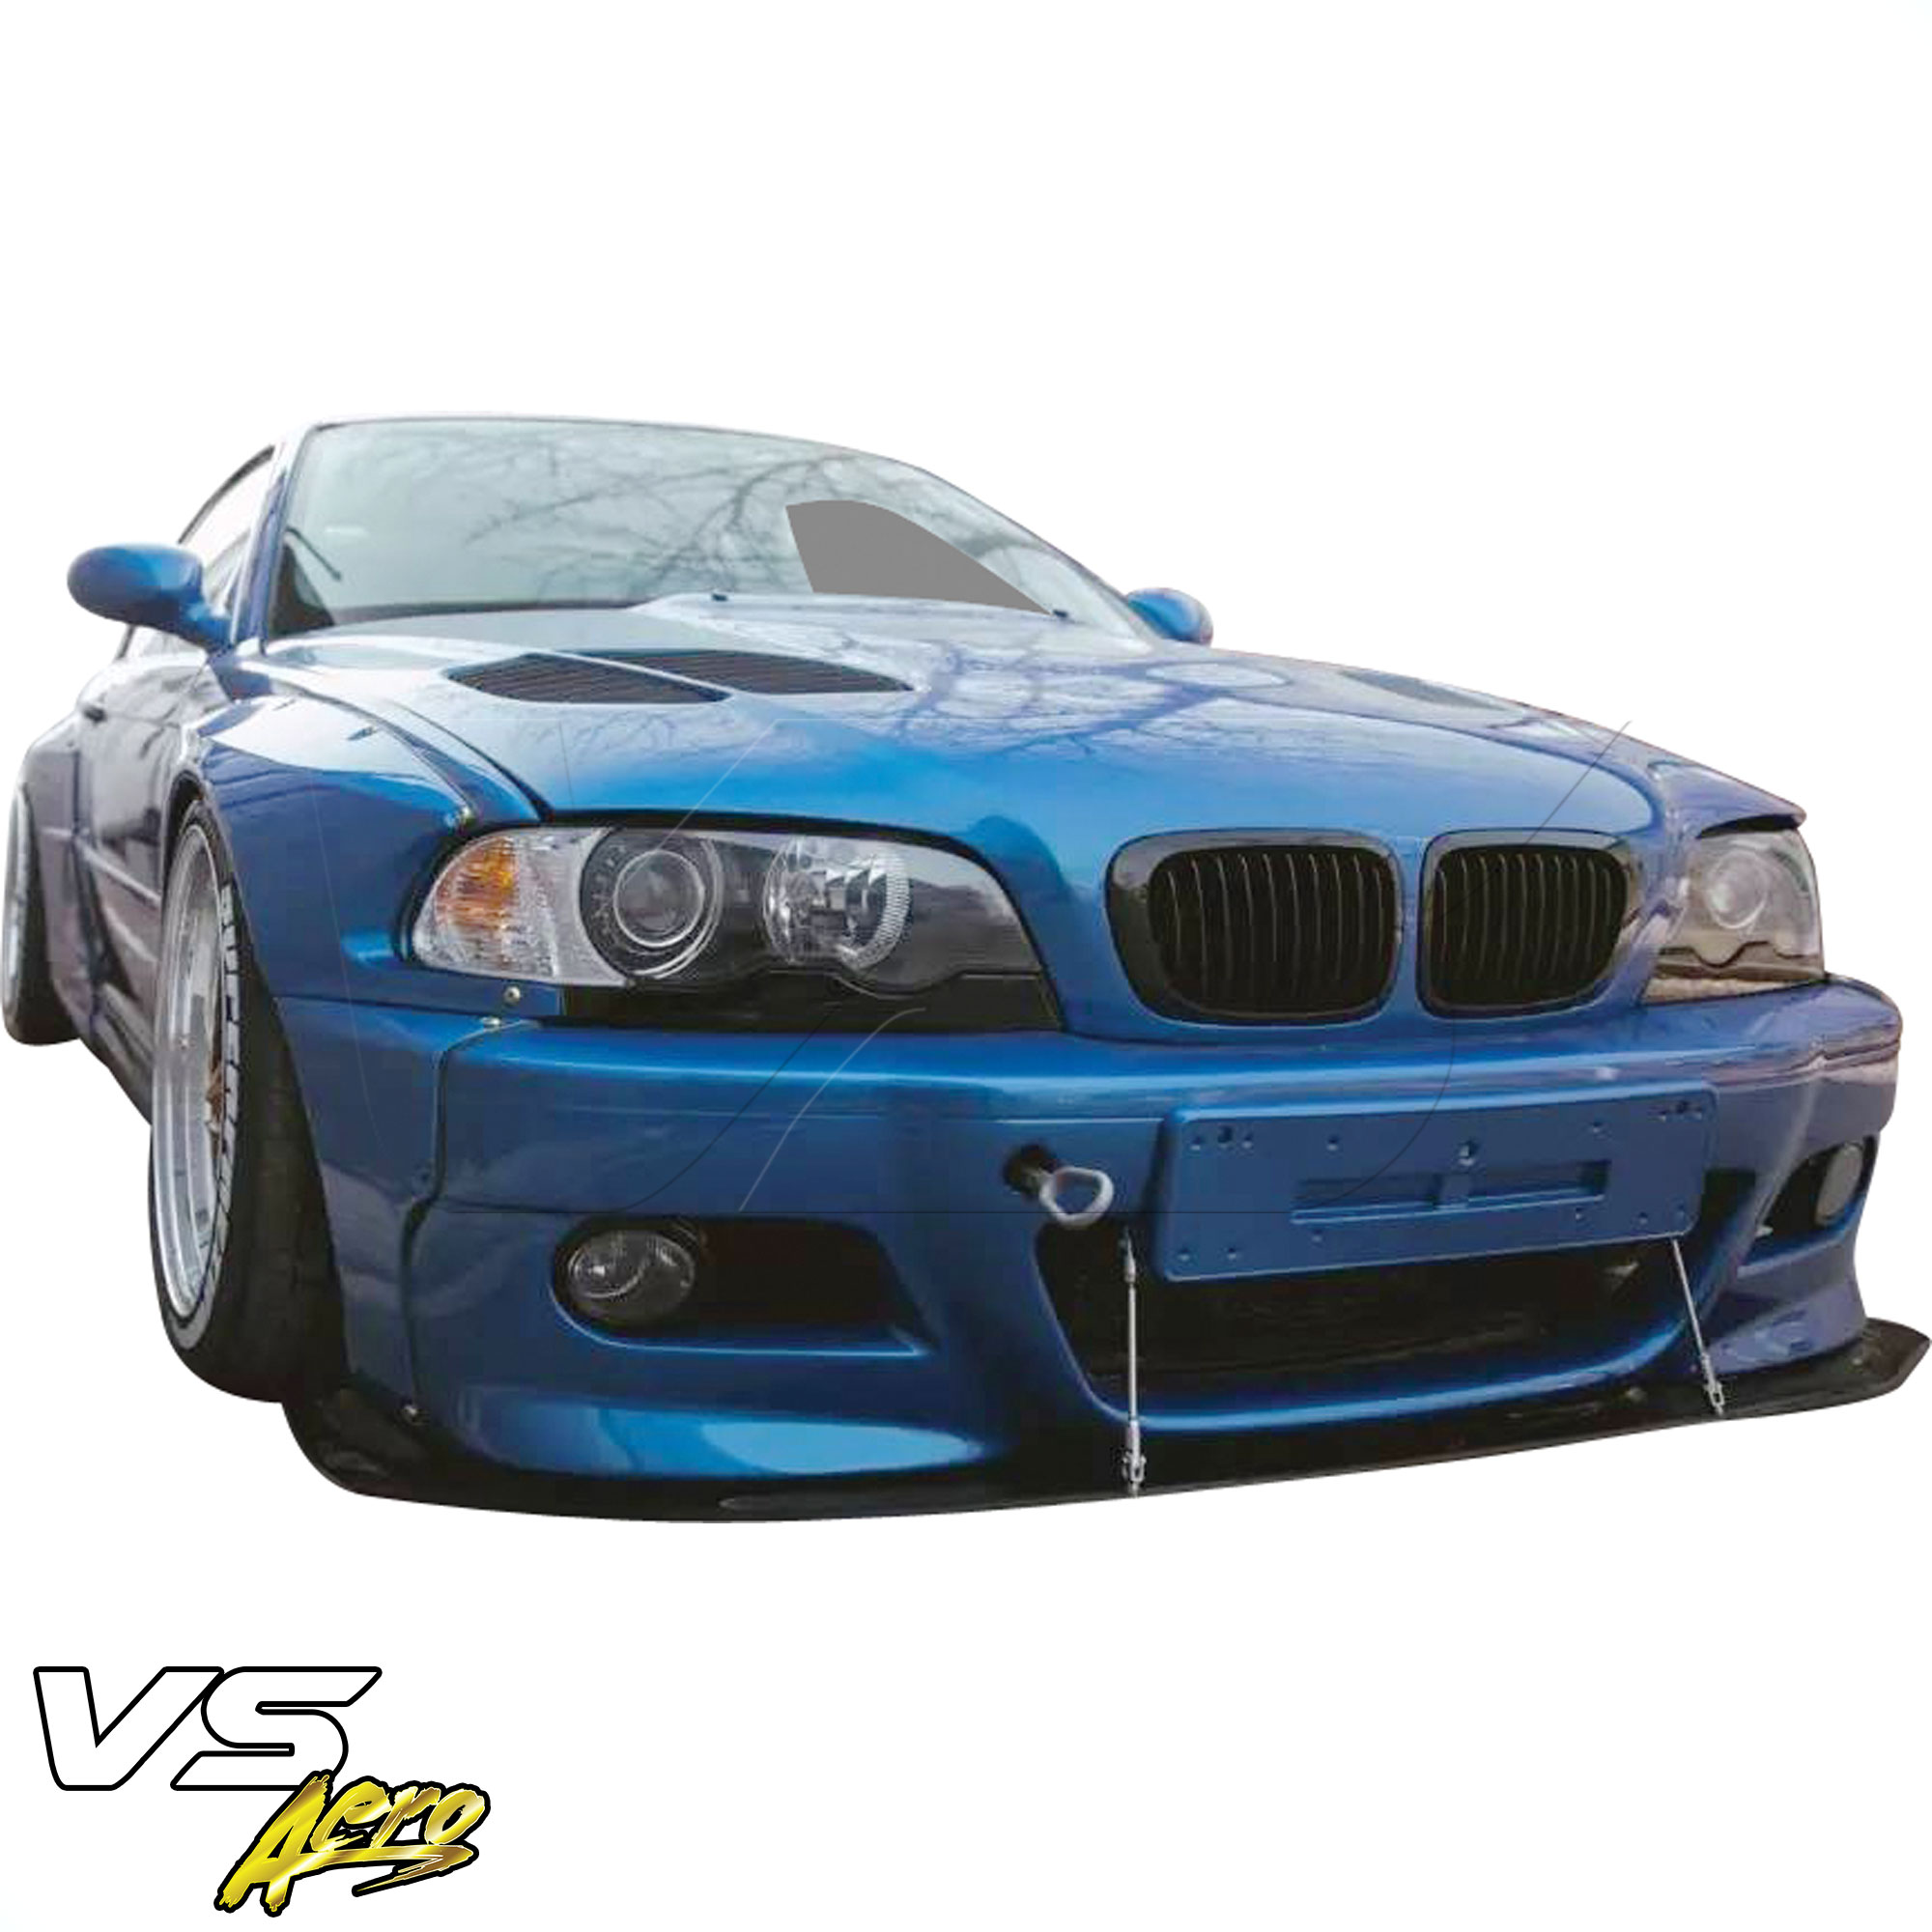 VSaero FRP TKYO Wide Body Front Lip > BMW 3-Series 325Ci 330Ci E46 1999-2001 > 2dr Coupe - Image 4